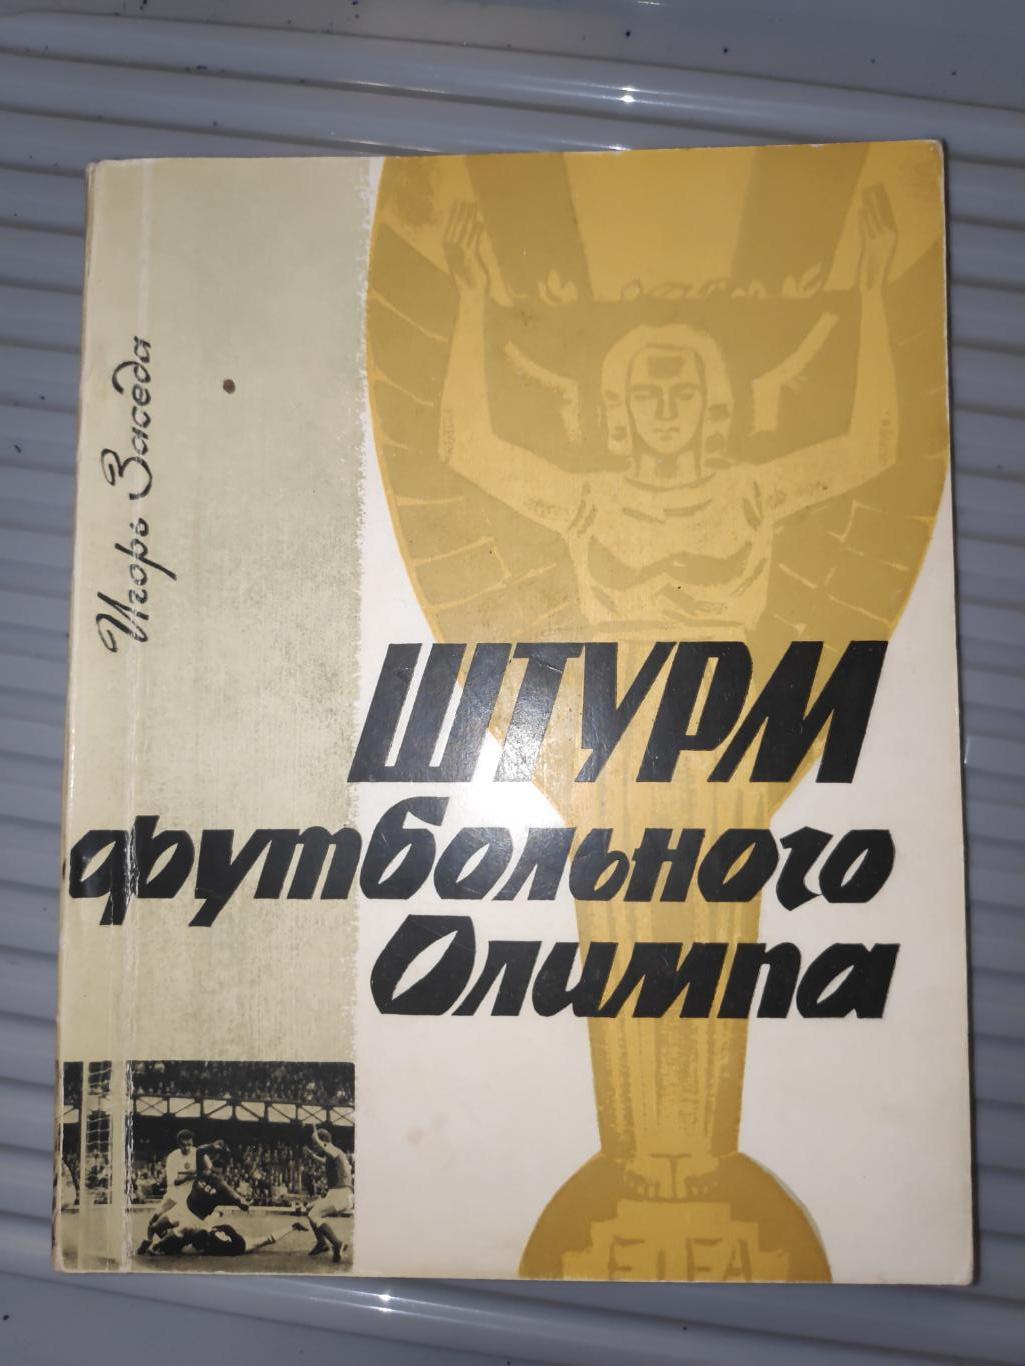 И.Заседа. Штурм футбольного олимпа . Киев, 1967 г.руссий язык.